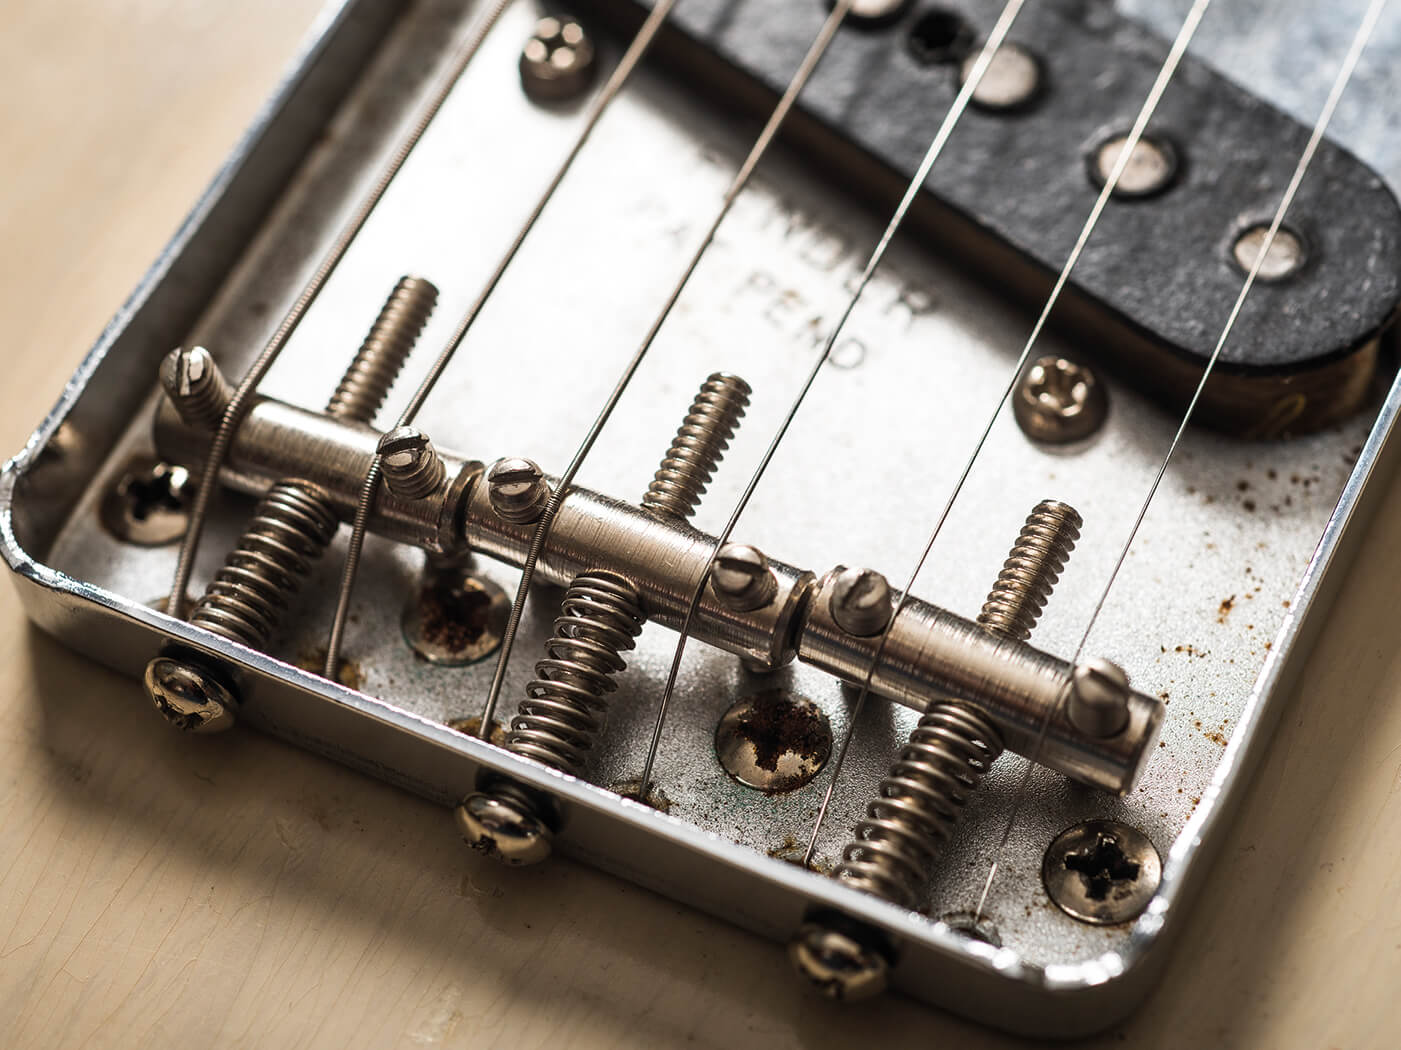 tm -style Bottom-Loading Chrome Electric Guitar Bridge Plate for Humbucker Pickups Telecaster 